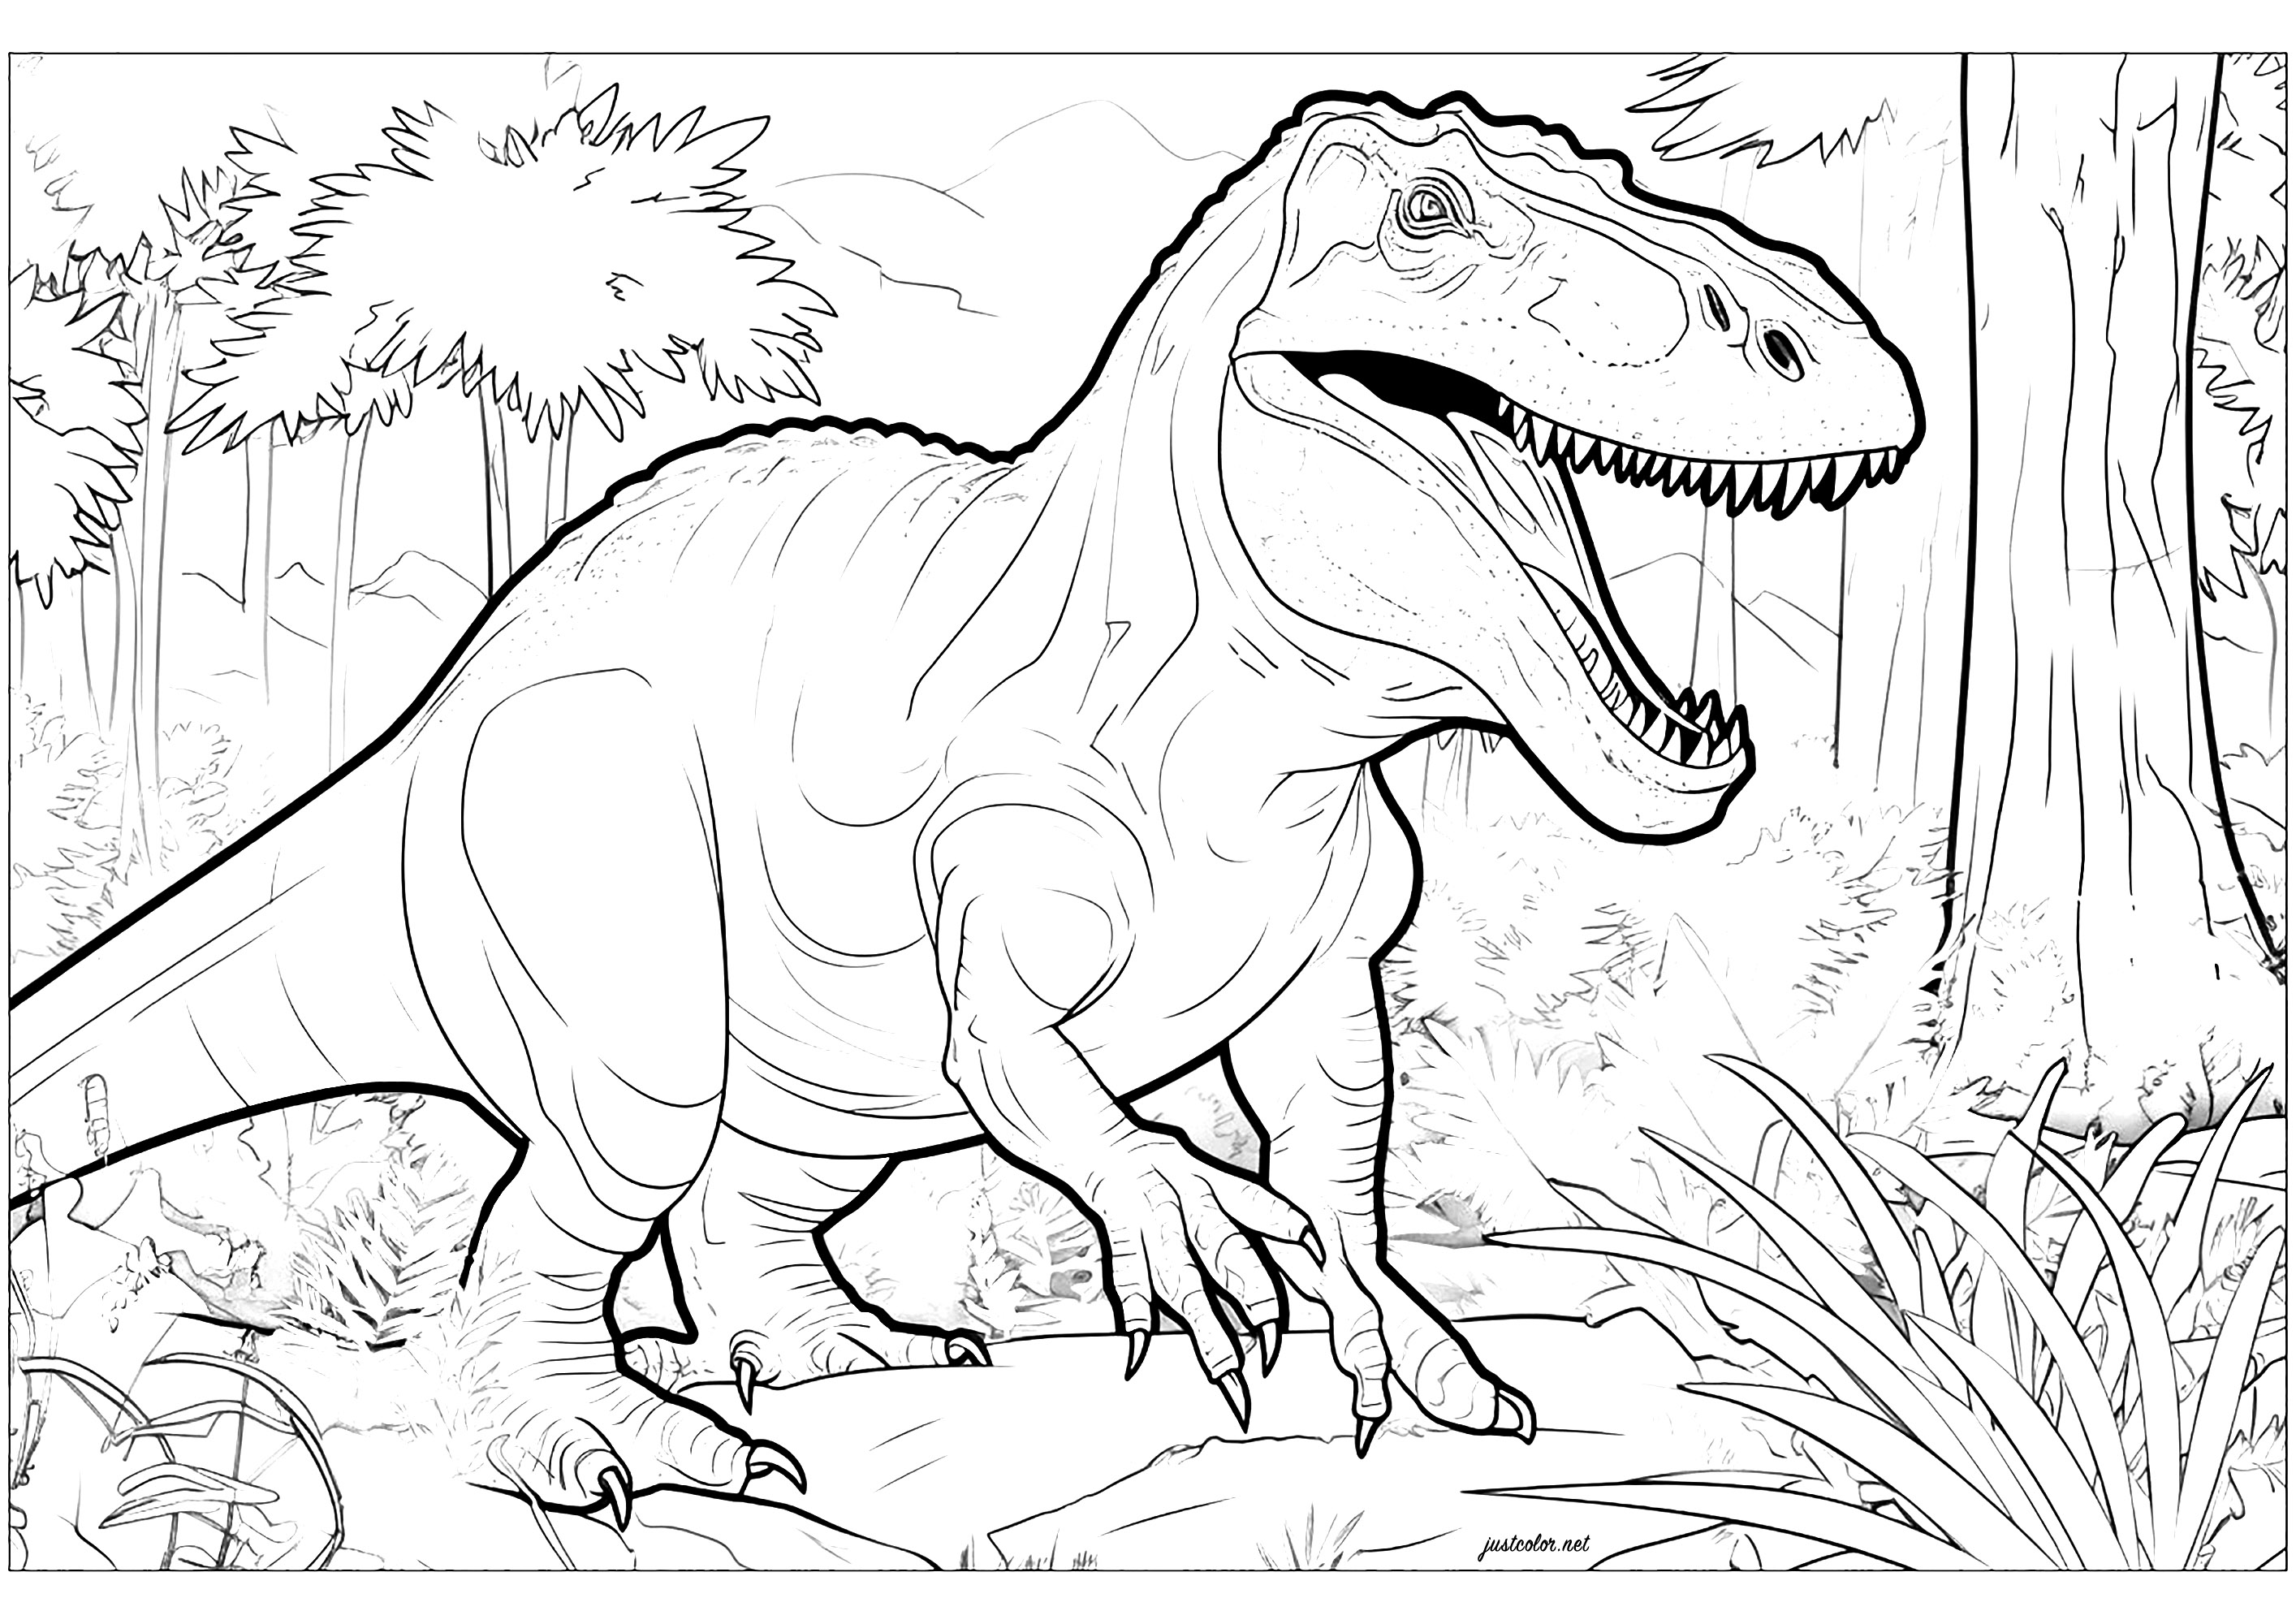 Il tirannosauro nel suo ambiente naturale. Colorazione realistica e ricca di dettagli